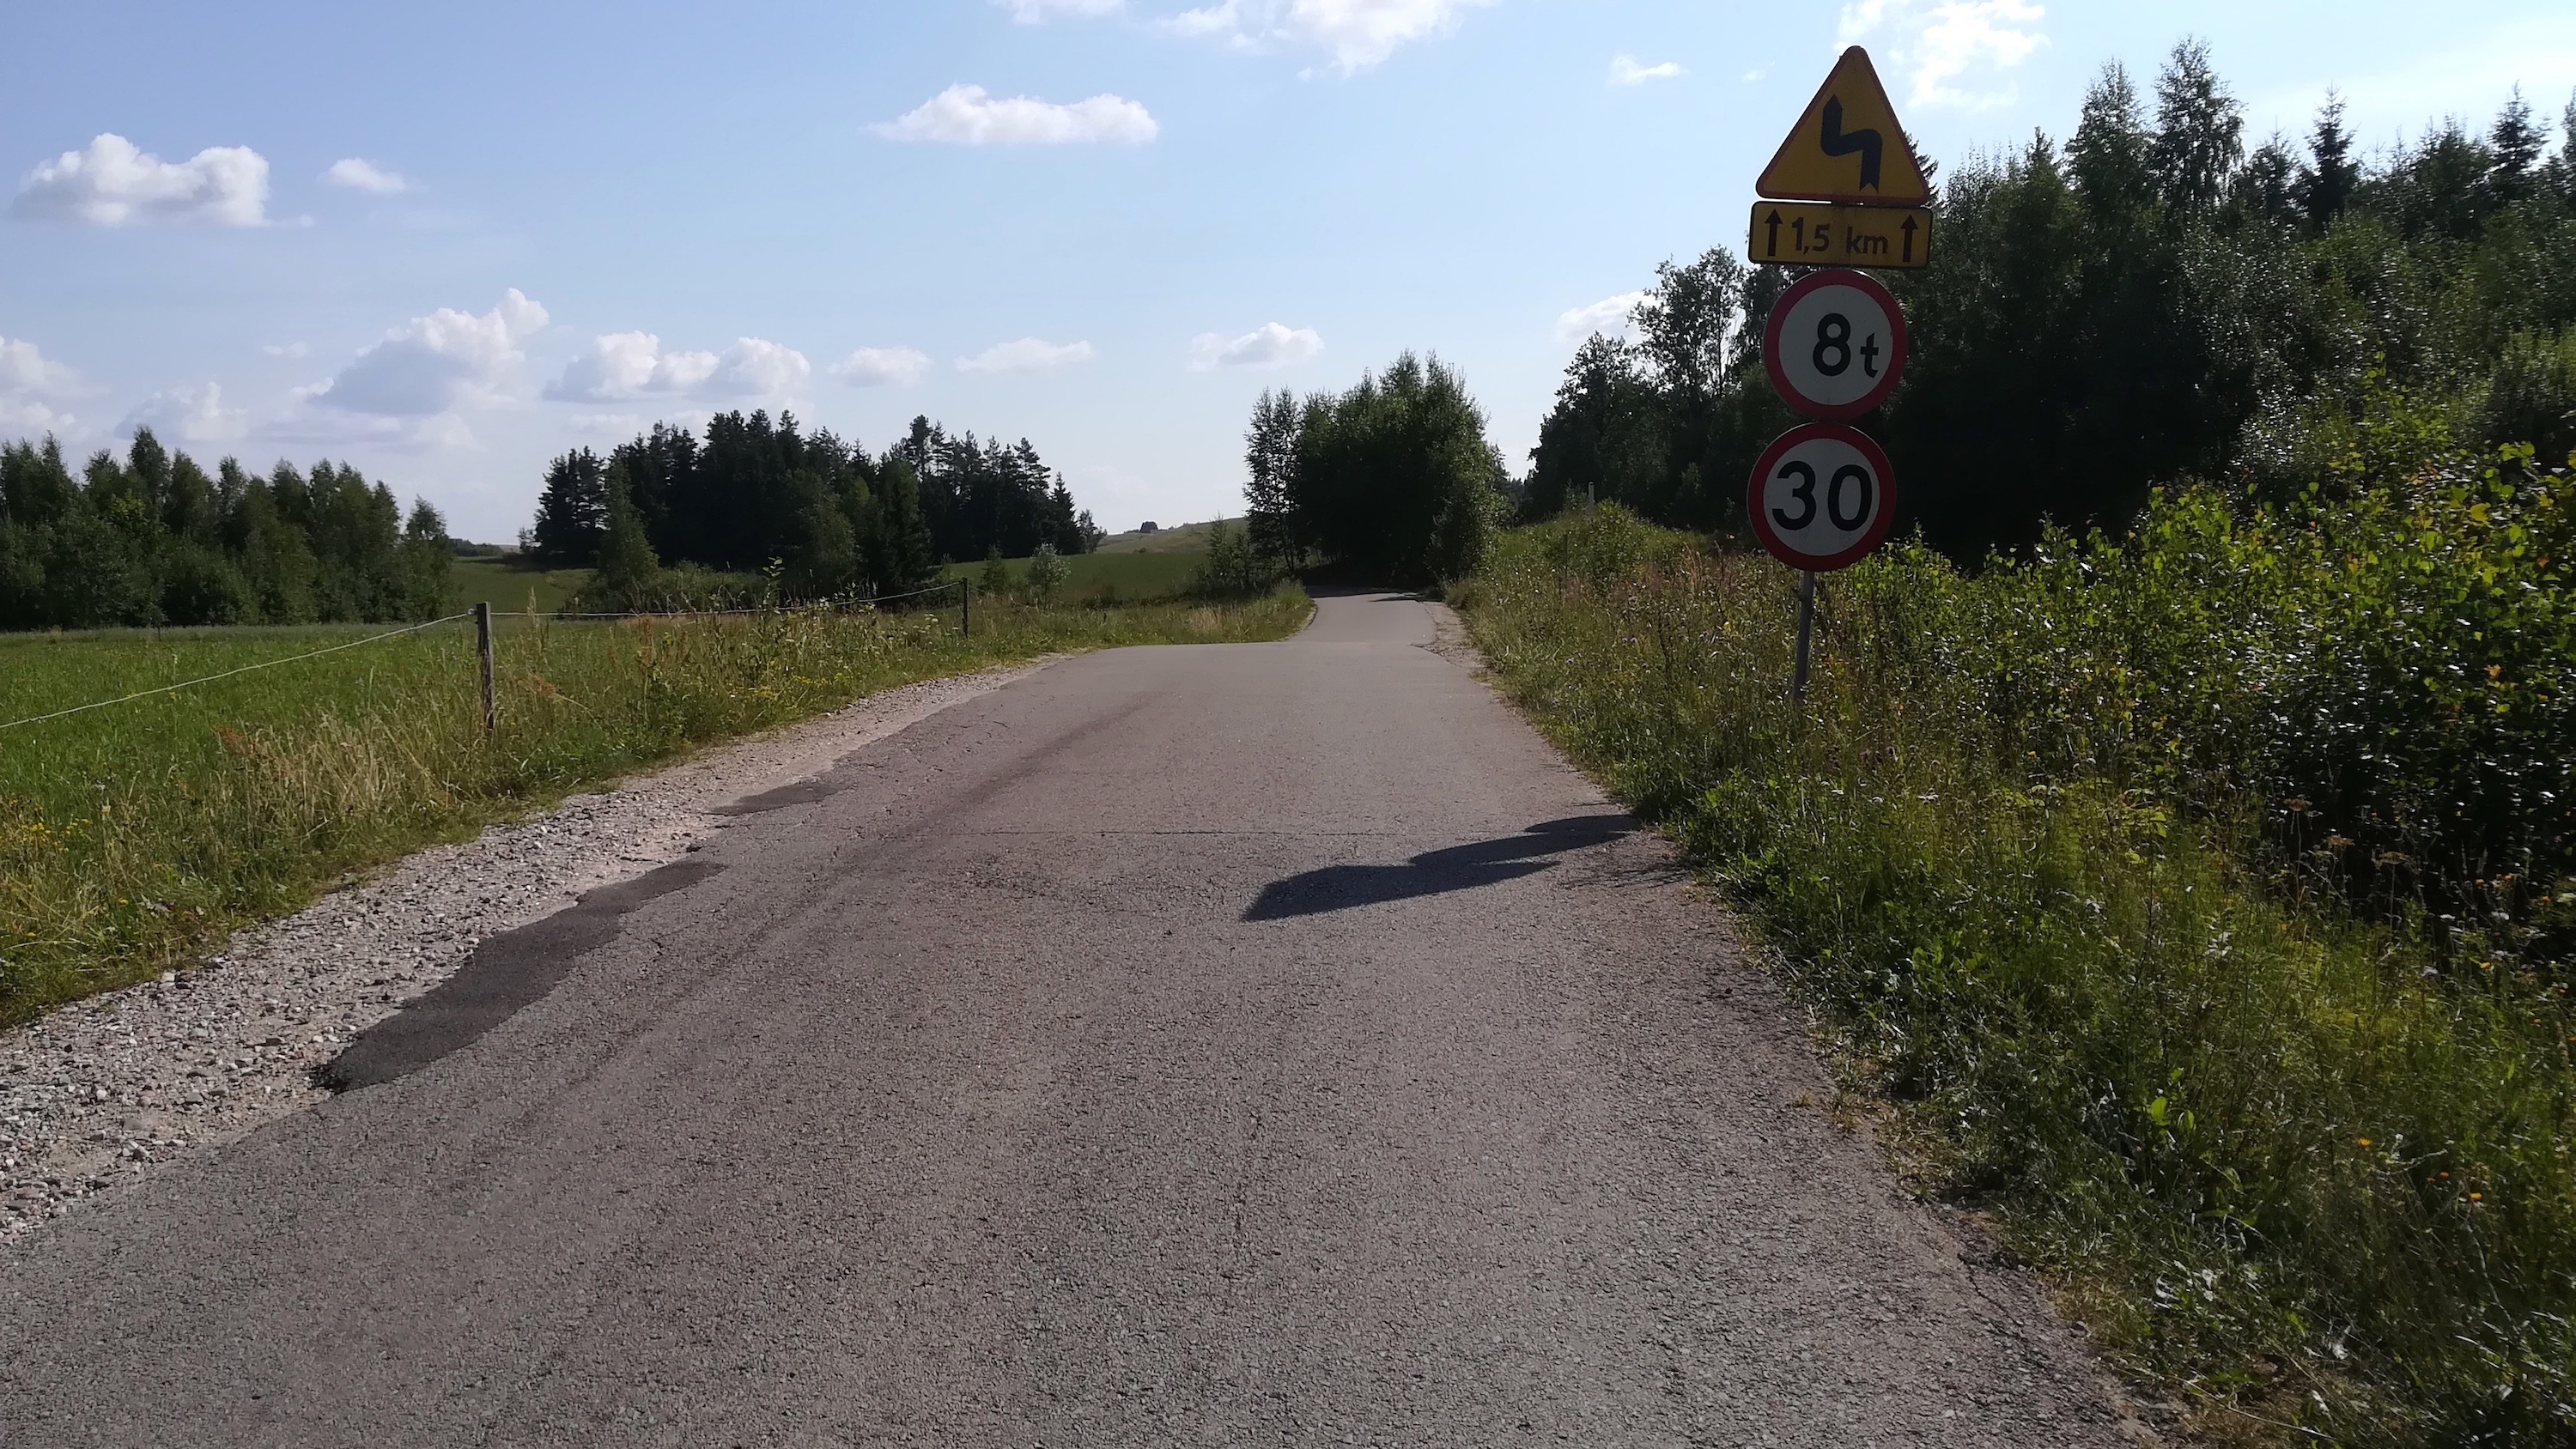 Jedna z dróg gminnych łączących Polskę i Litwę. Znaki drogowe wskazują m.in. na ograniczenia dopuszczalnej masy całkowitej pojazdów do ośmiu ton. Fot. Rafał Lesiecki / Defence24.pl